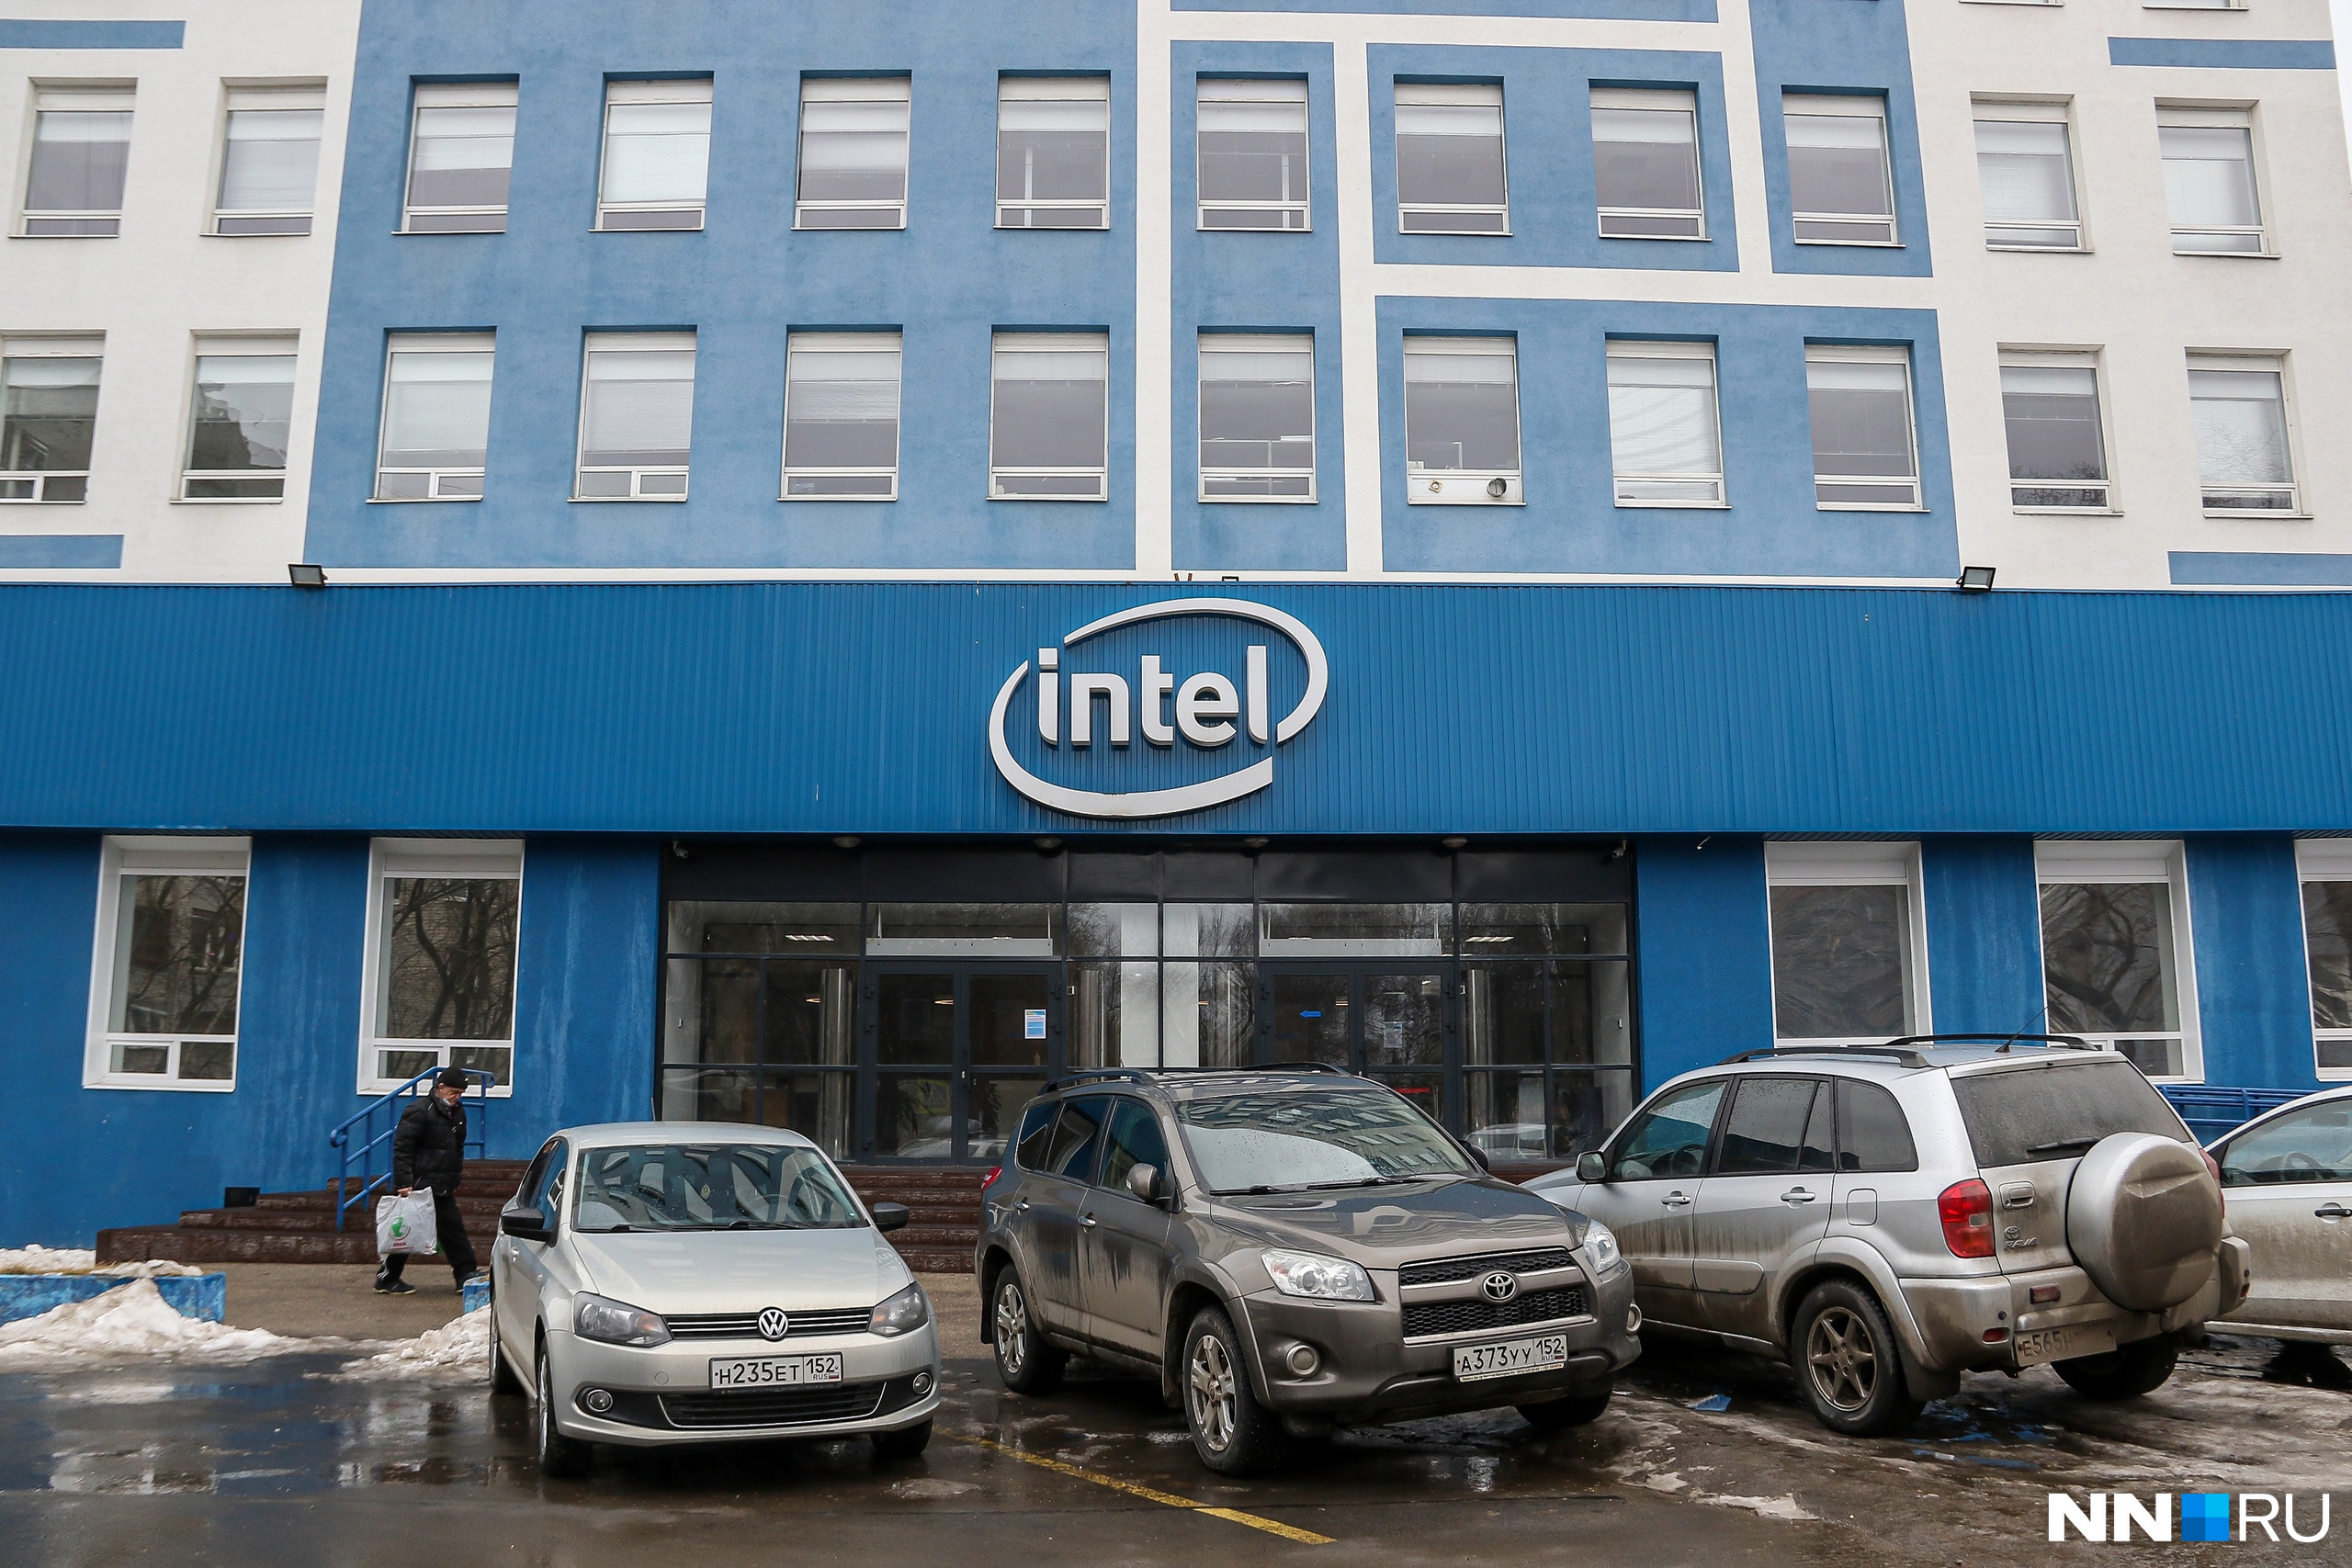 Айтишники наступают. Стало известно, кто выкупил офис Intel в Нижнем Новгороде